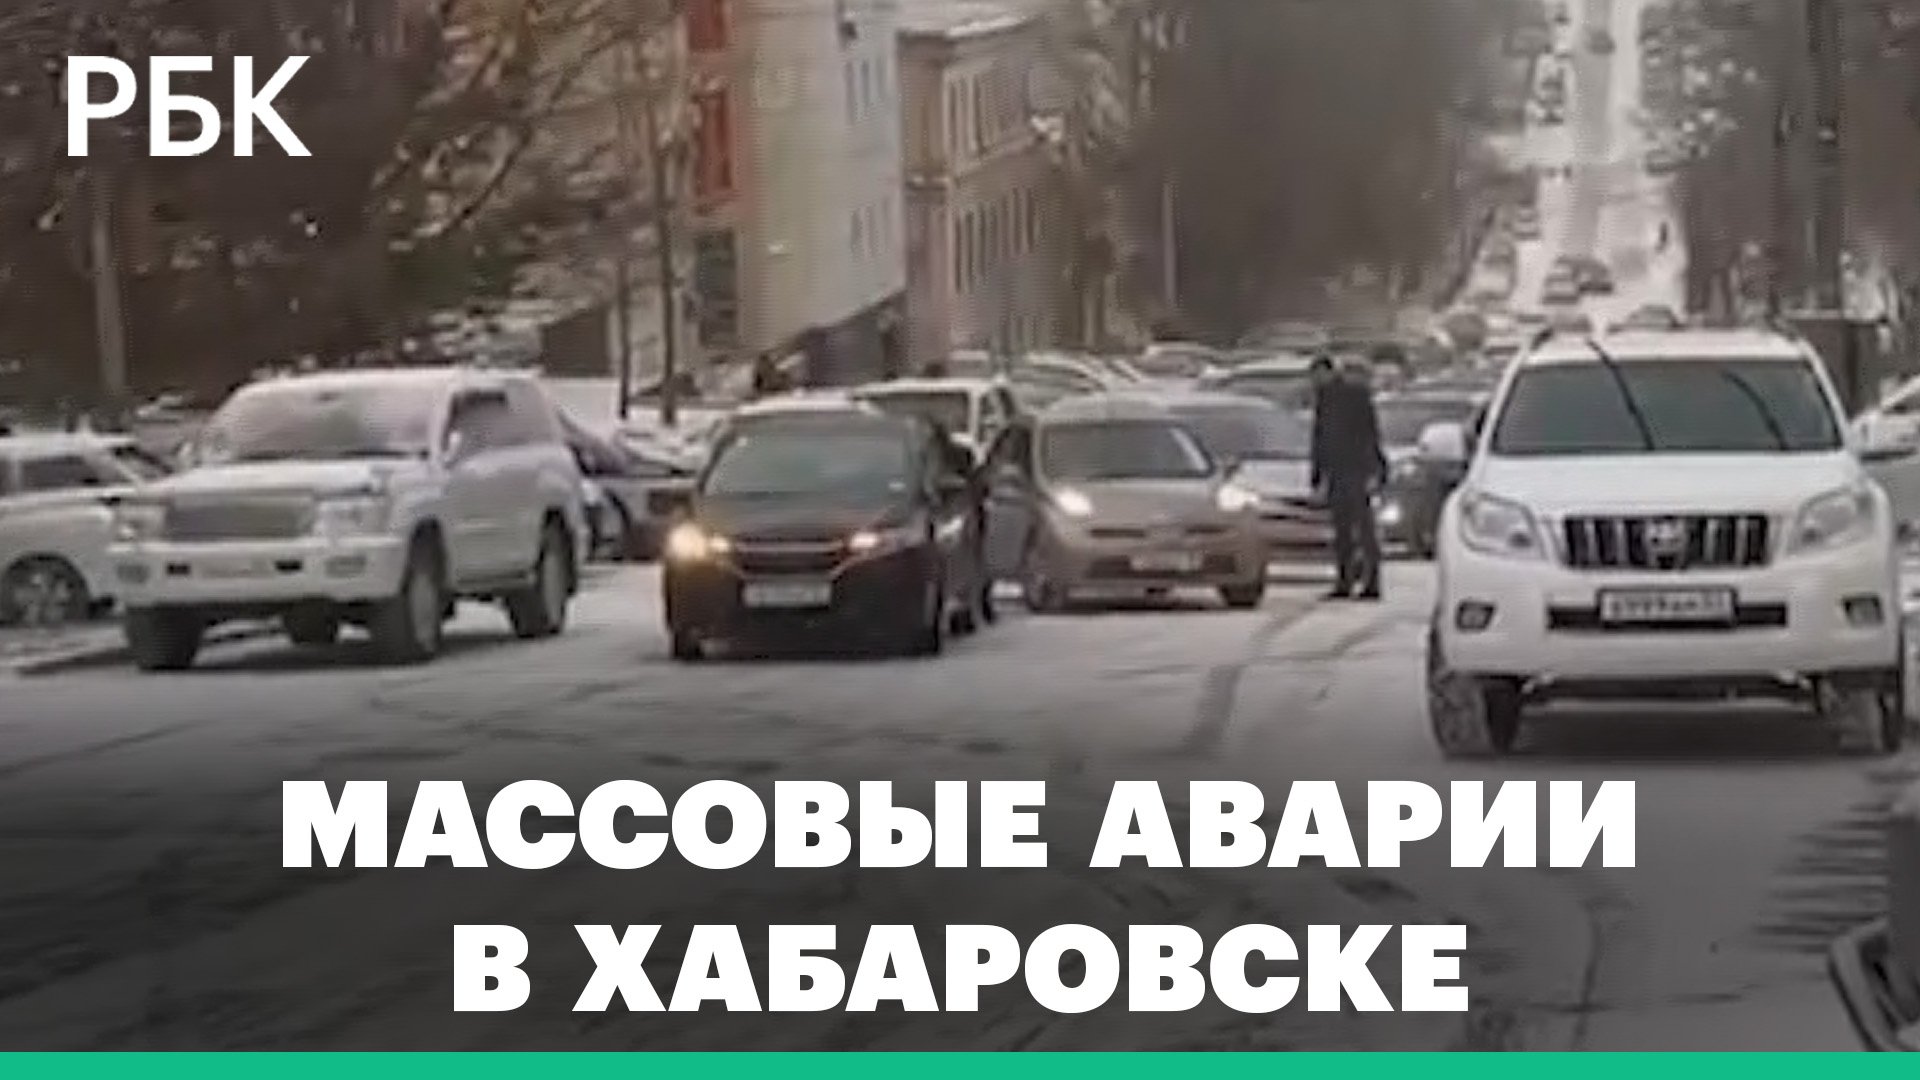 Десятки автомобилей столкнулись на дорогах Хабаровска из-за гололеда